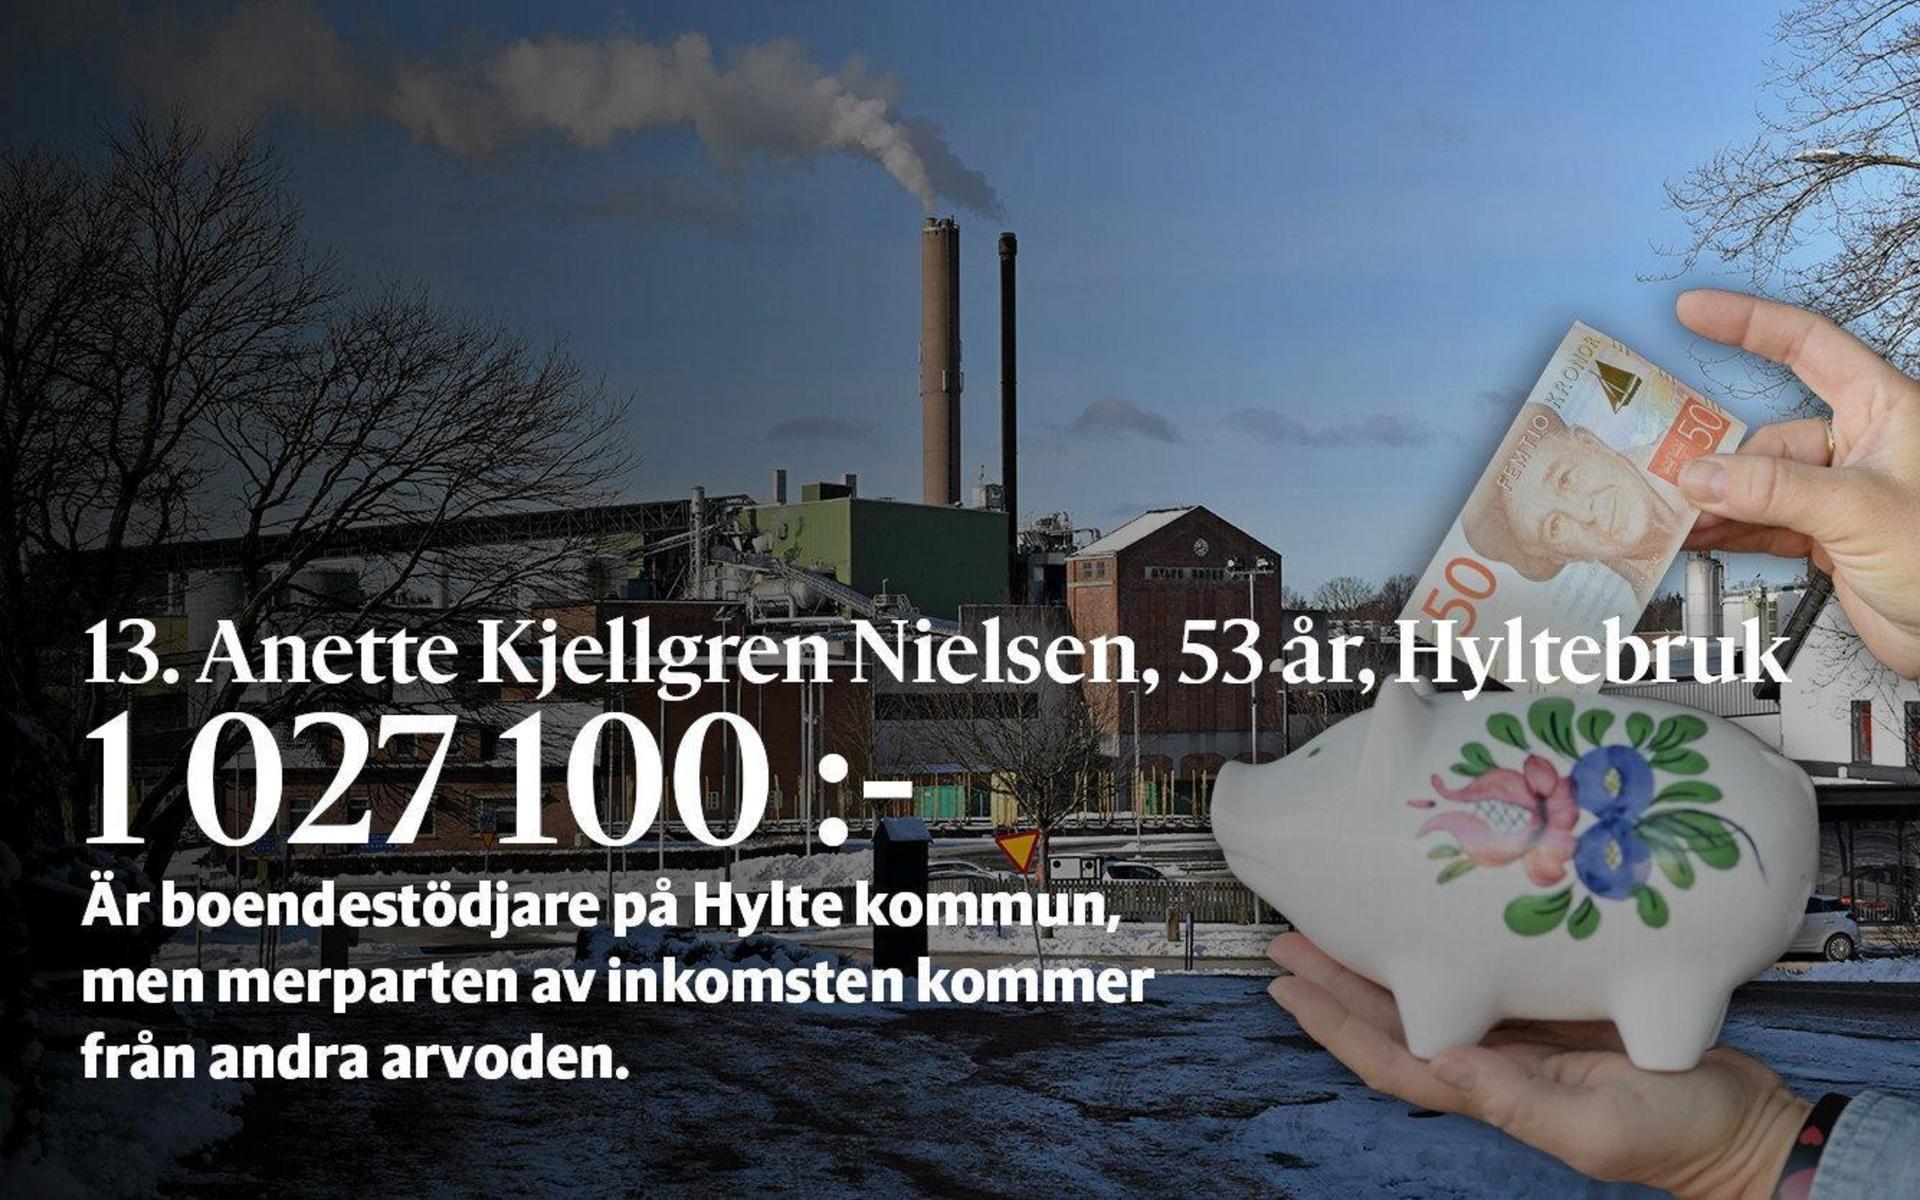 13. Anette Kjellgren Nielsen är boendestödjare på Hylte kommun, men får en stor del av sin inkomst från arvoden. ”Jag har andra uppdrag vid sidan av med arvoden”, berättade Anette för HP i fjol utan att gå in på detaljer.